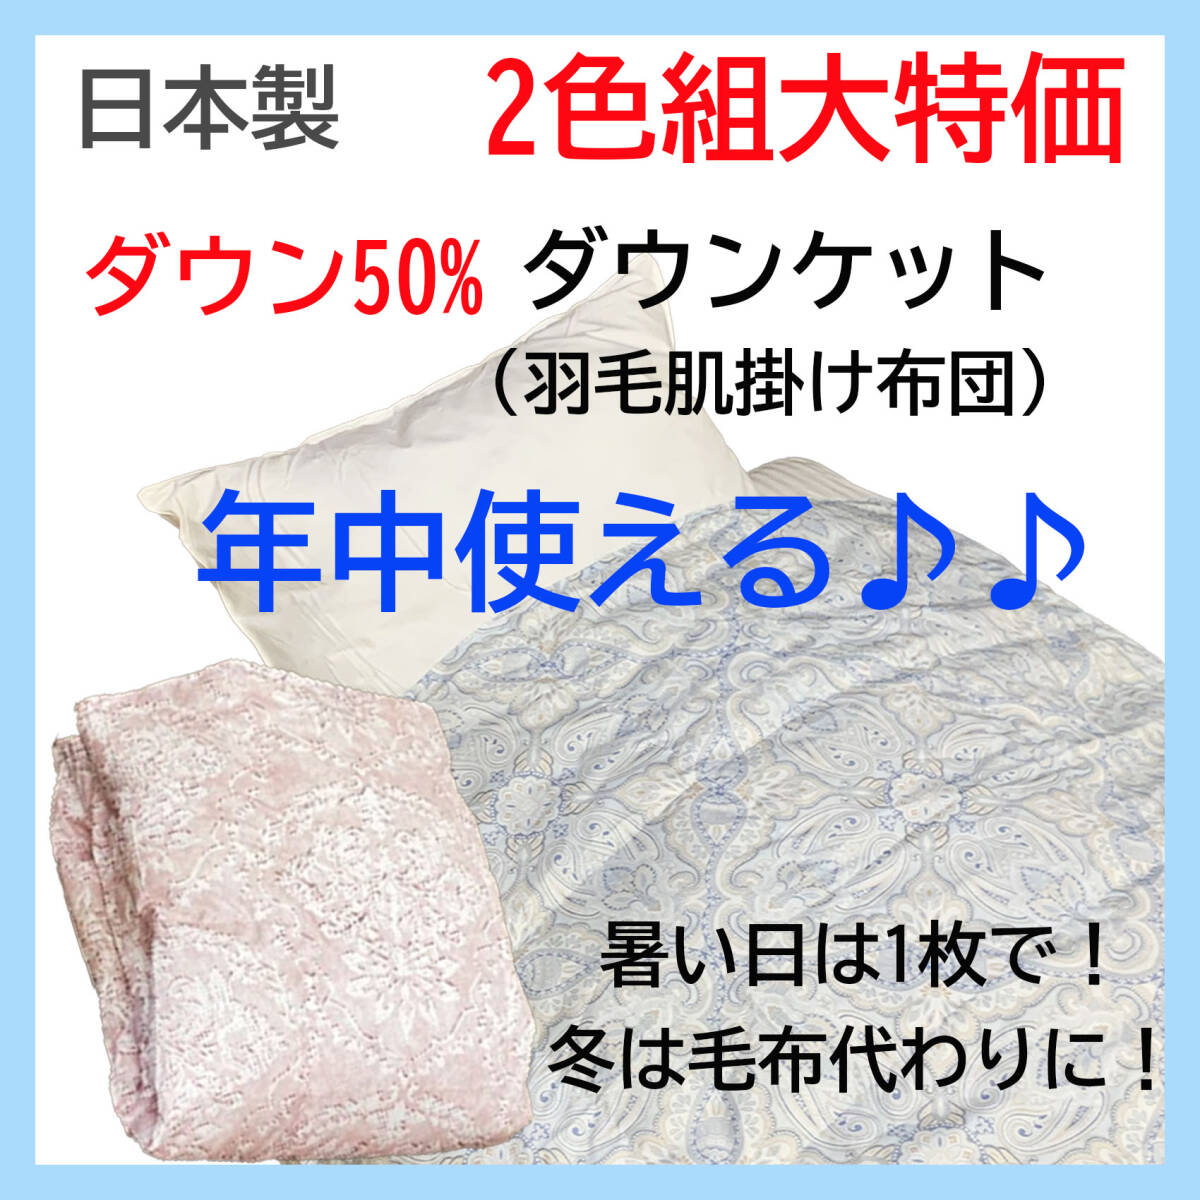 ダウン50% 日本製 ダウンケット 2色組 ブルー ピンク 羽毛肌掛け布団 年中使える 洗える 清潔 数量限定 新品特価 送料無料 の画像1